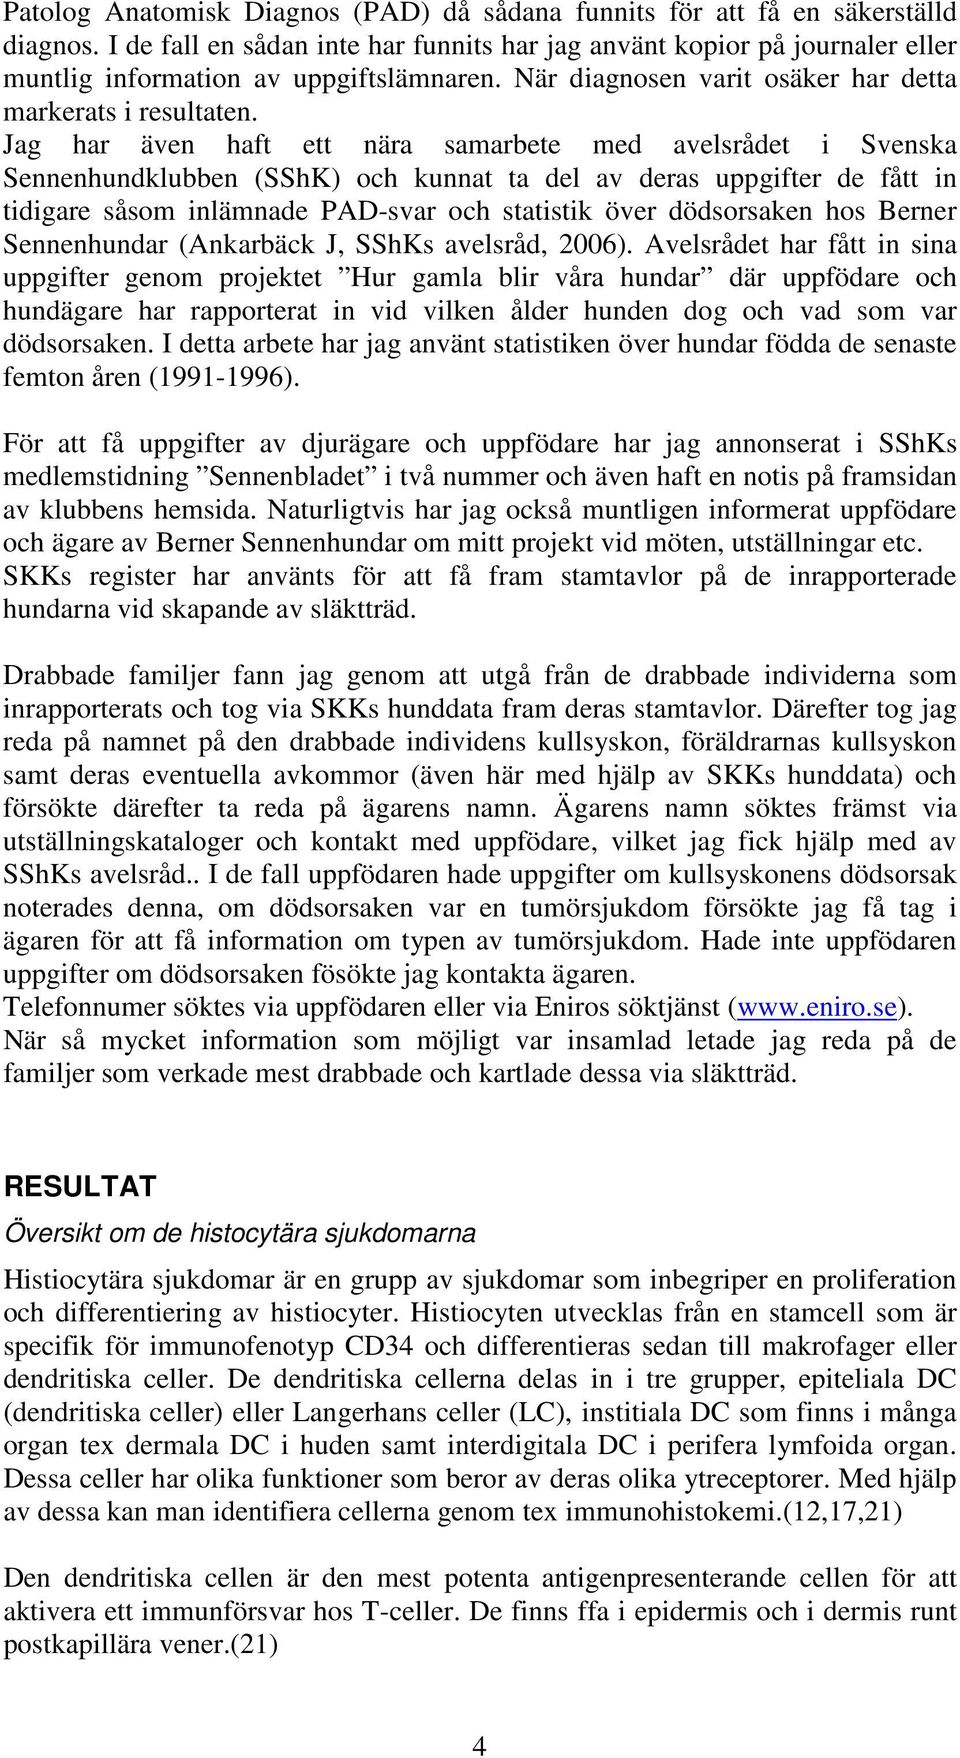 Jag har även haft ett nära samarbete med avelsrådet i Svenska Sennenhundklubben (SShK) och kunnat ta del av deras uppgifter de fått in tidigare såsom inlämnade PAD-svar och statistik över dödsorsaken